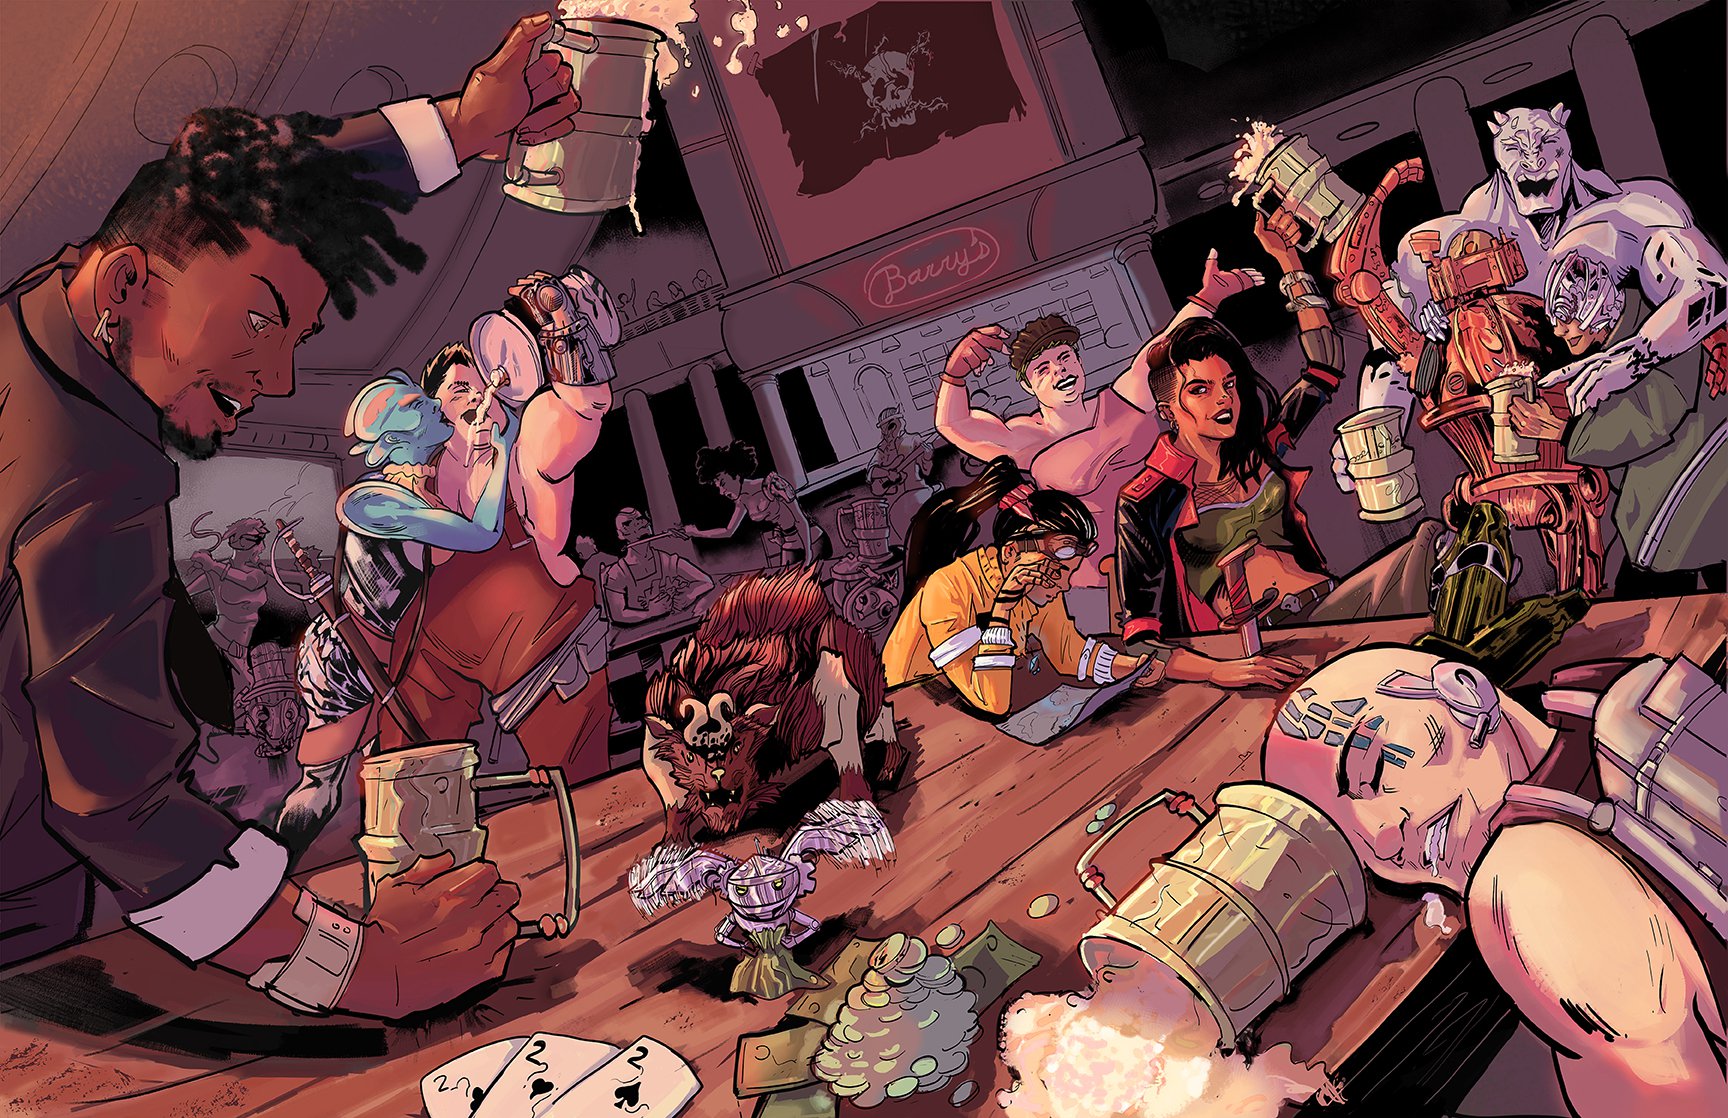 Marco Defillo comic book style tavern